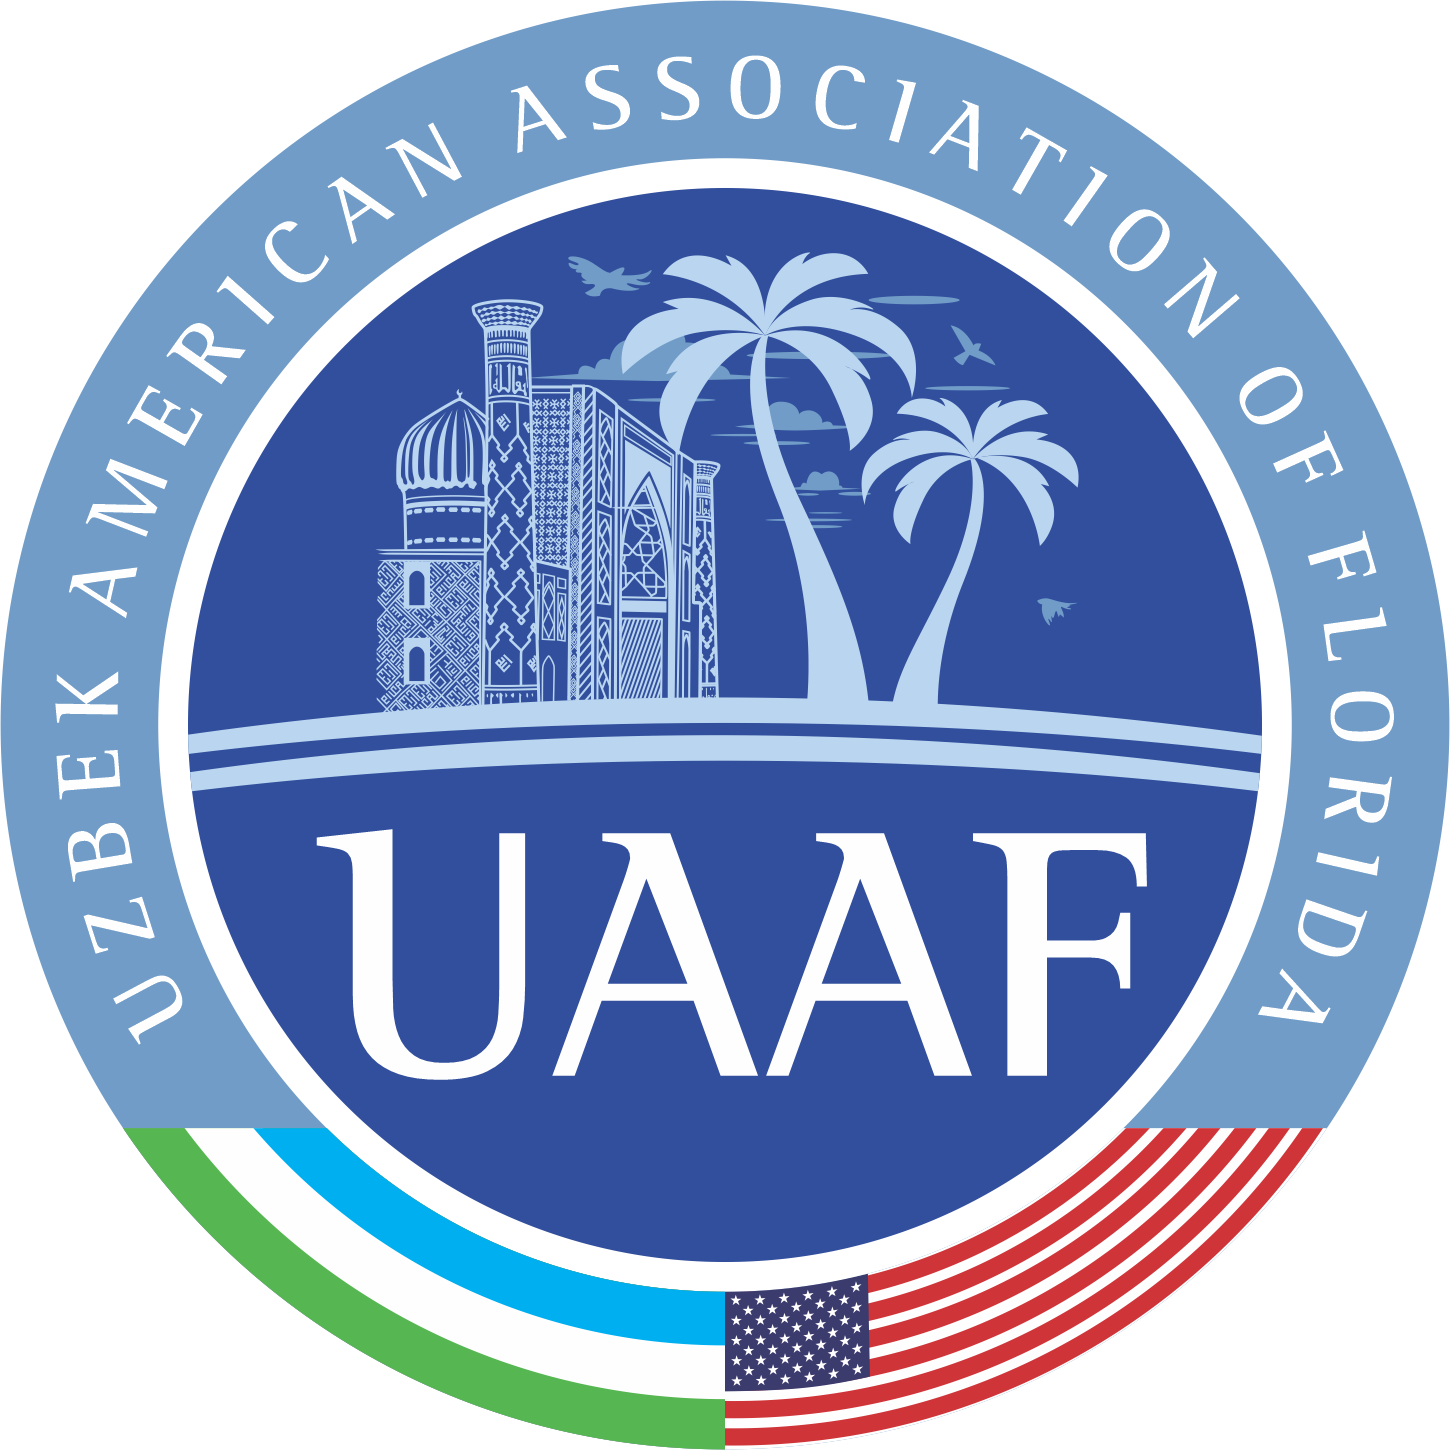 Uzbek Association Near Me - Uzbek American Association of Florida